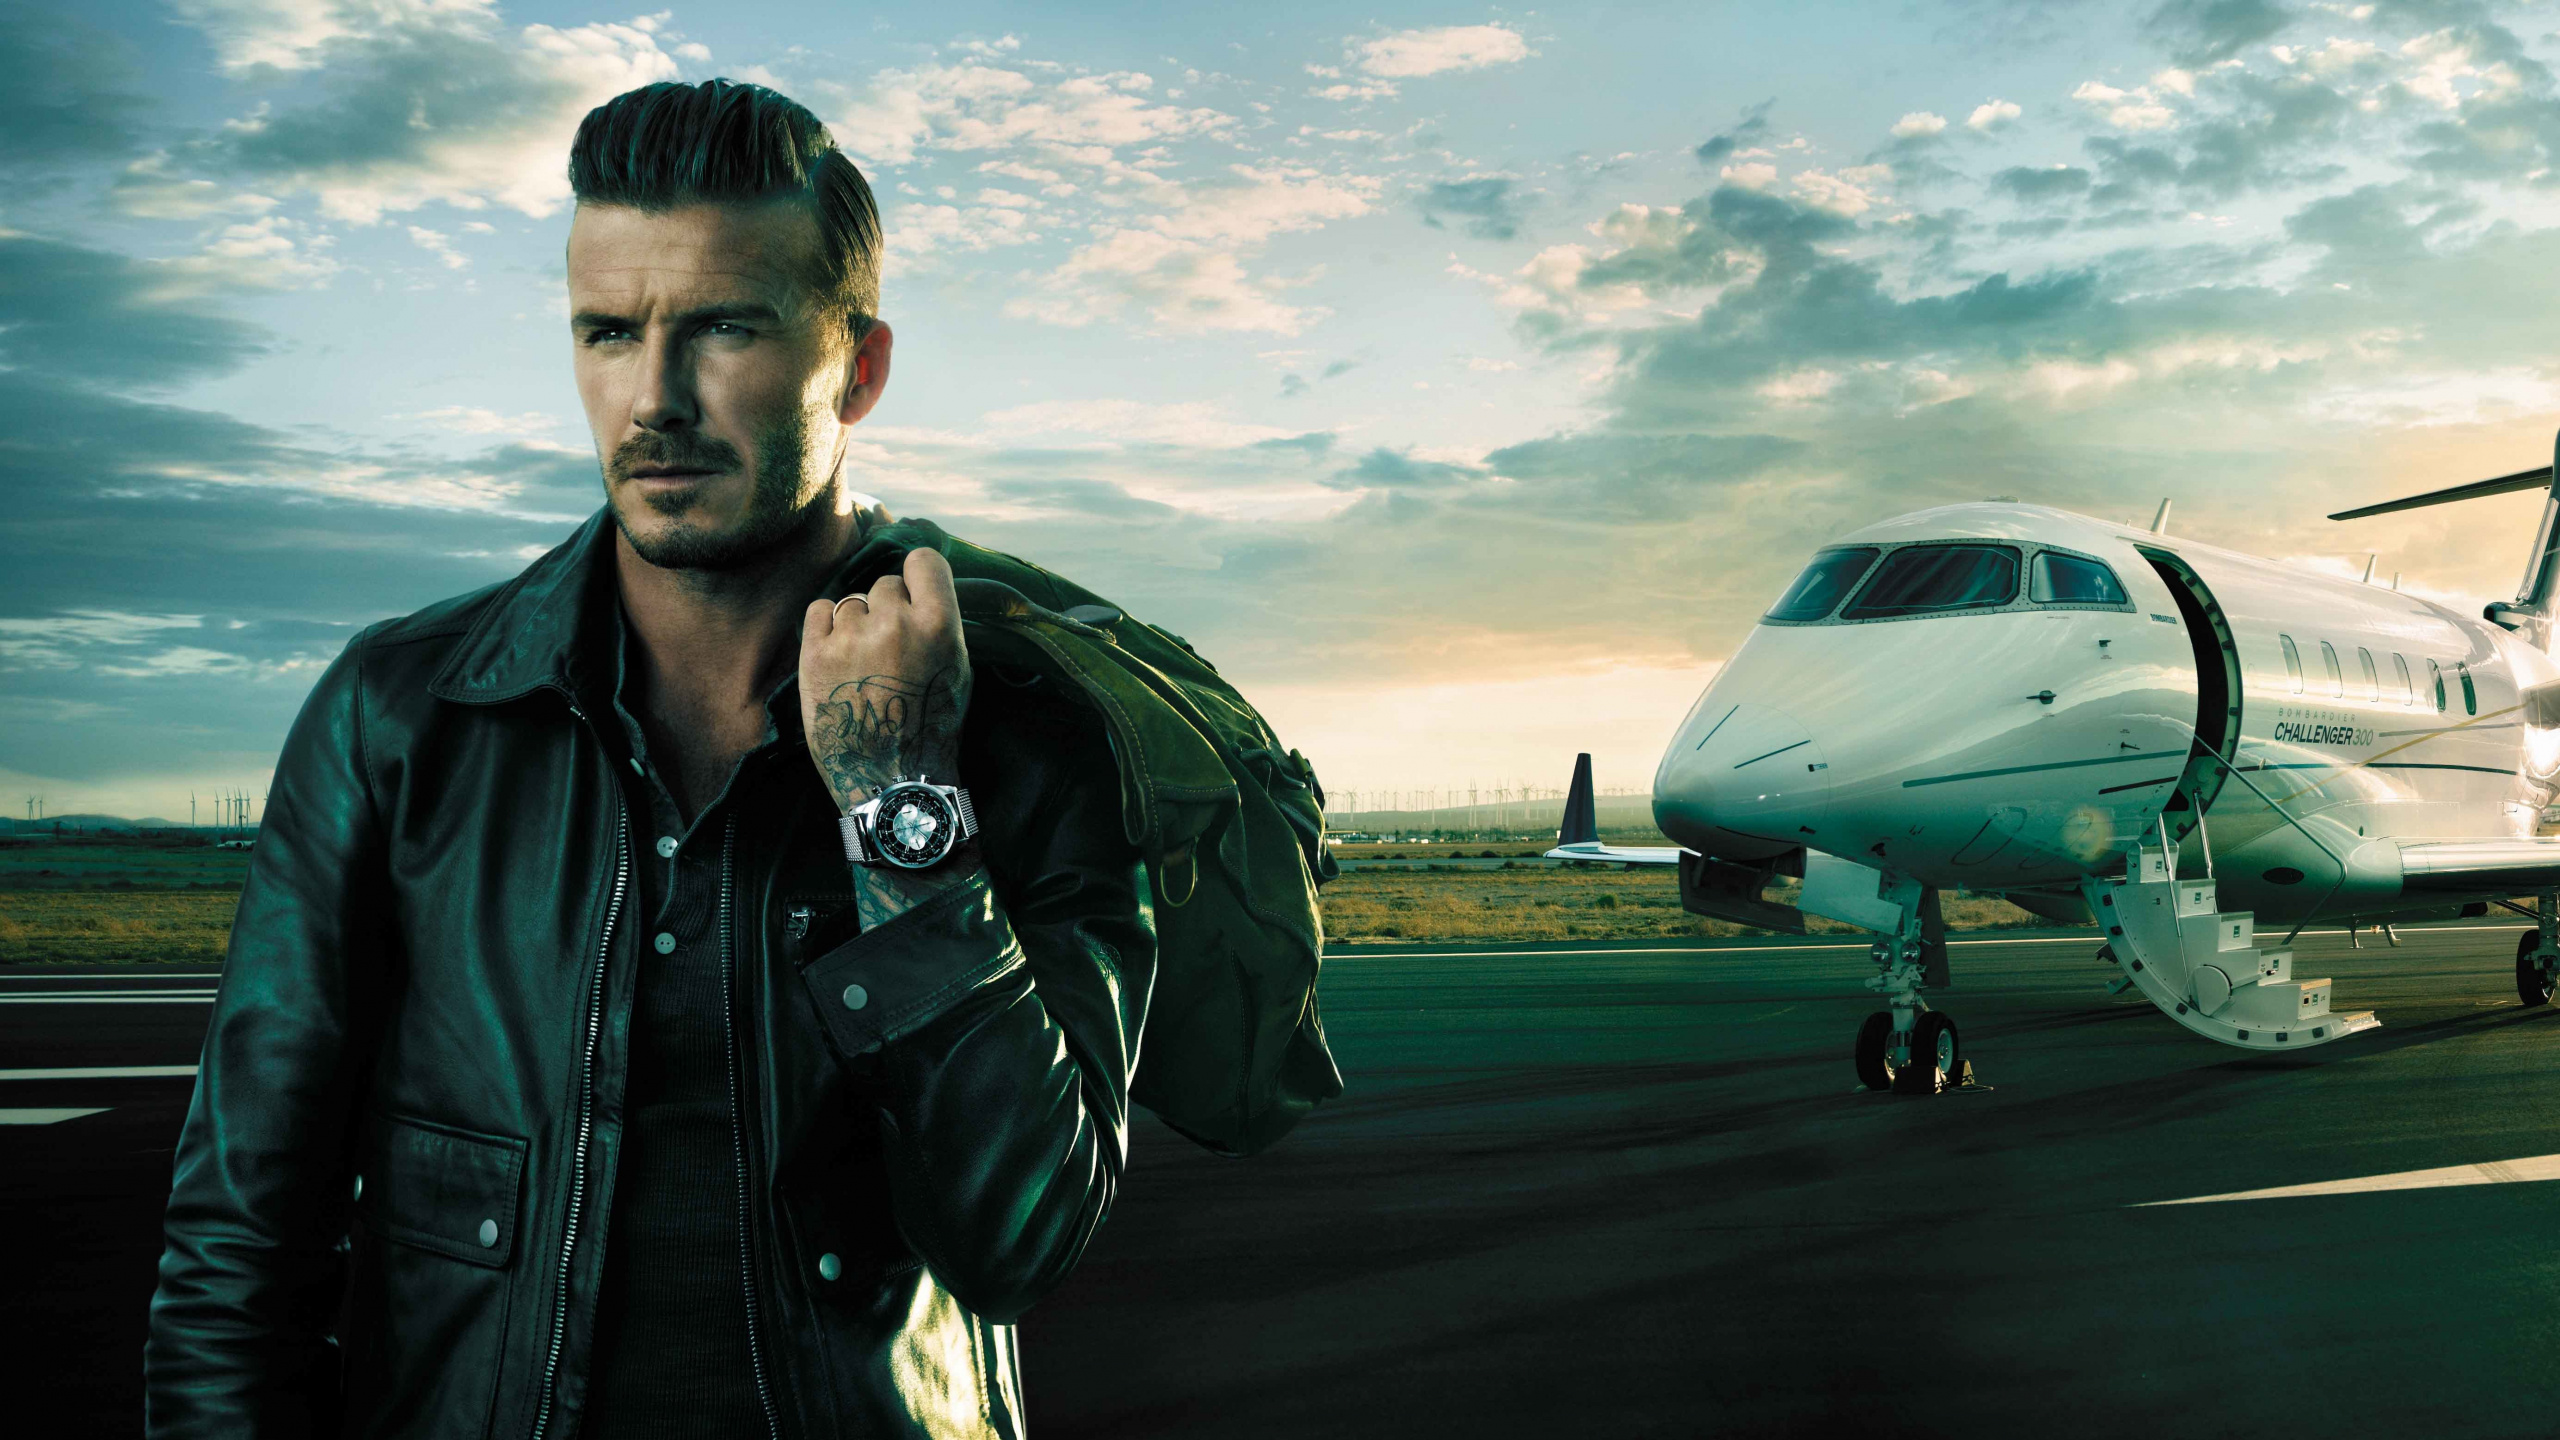 David Beckham, Breitling SA, Luft-und Raumfahrttechnik, Flugreise, Fluggesellschaft. Wallpaper in 2560x1440 Resolution